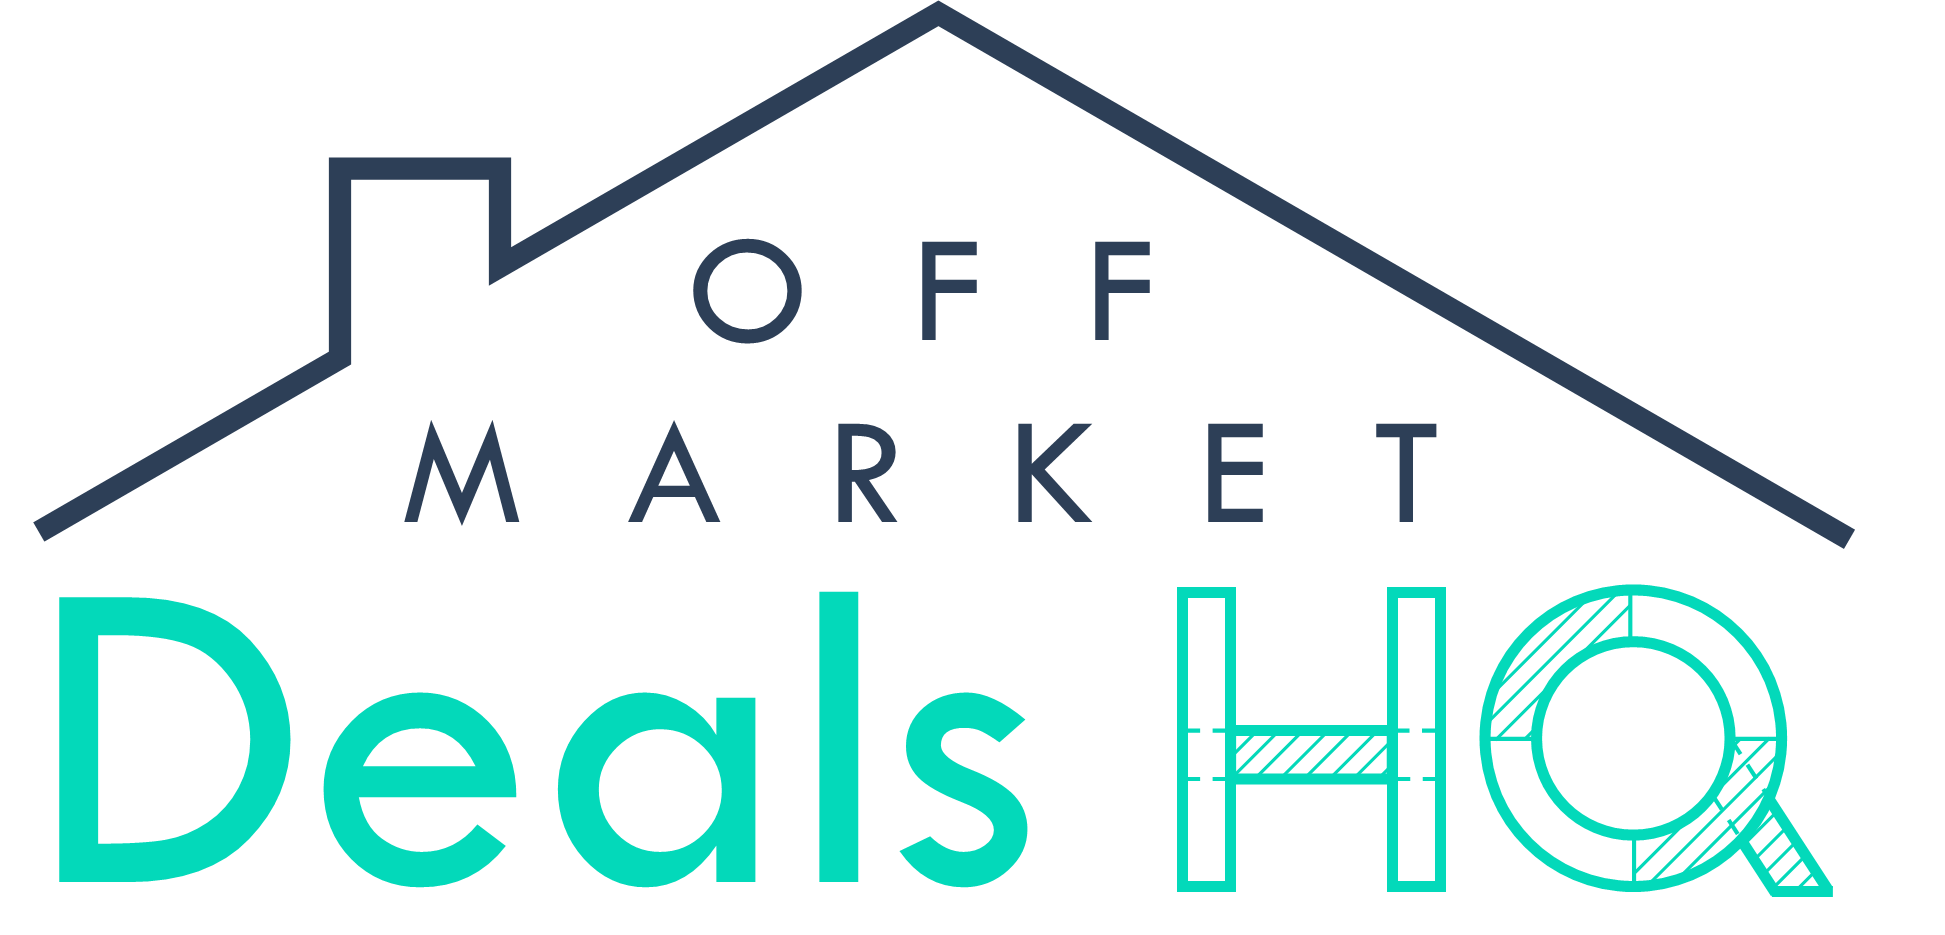 Off-Market Deals HQ